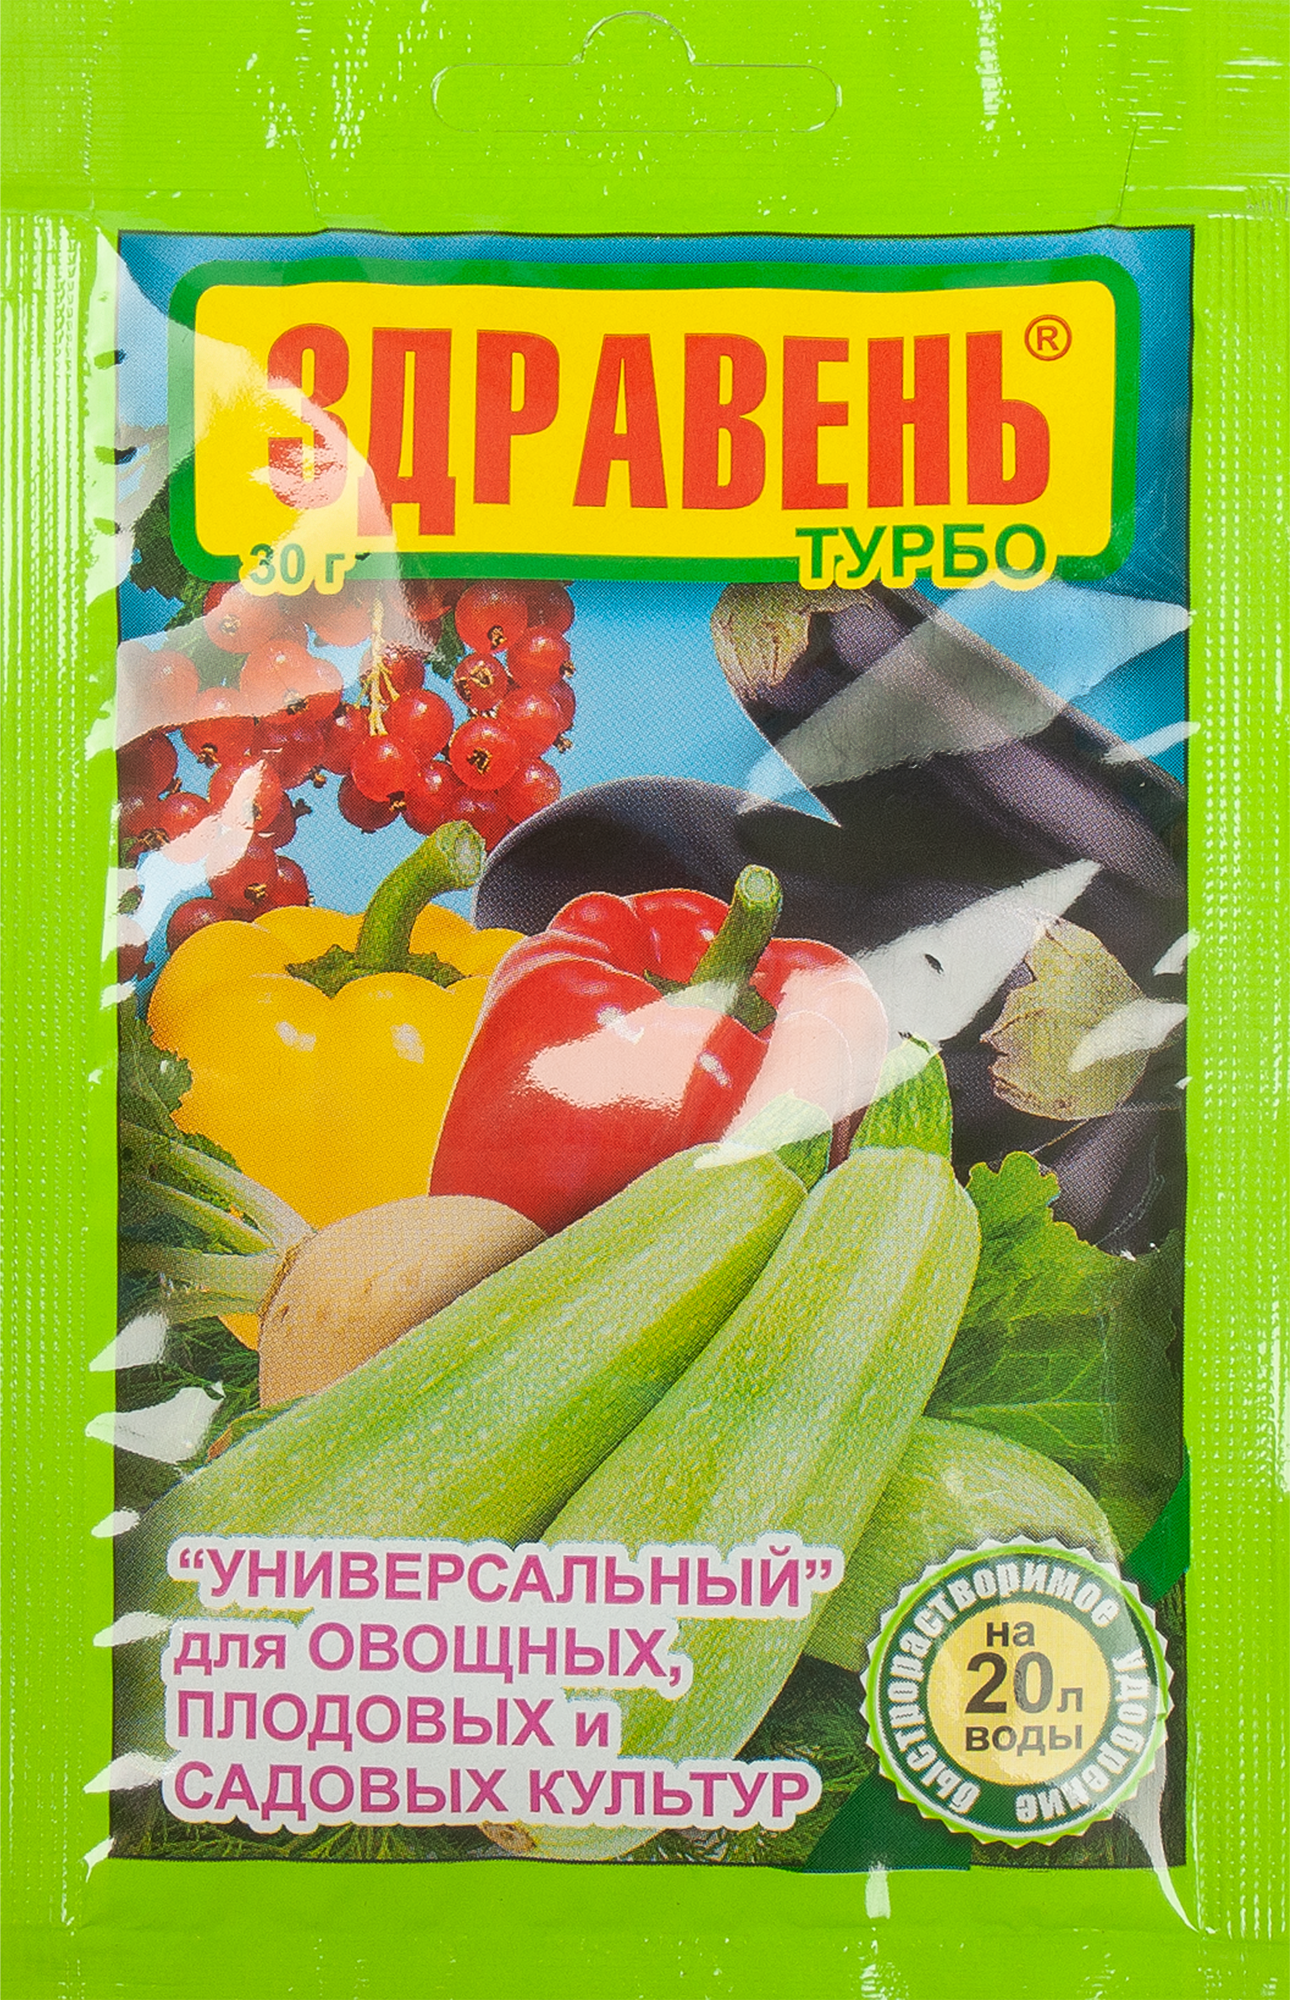 Удобрение Здравень универсальное Турбо 30 г в Москве – купить по низкойцене в интернет-магазине Леруа Мерлен